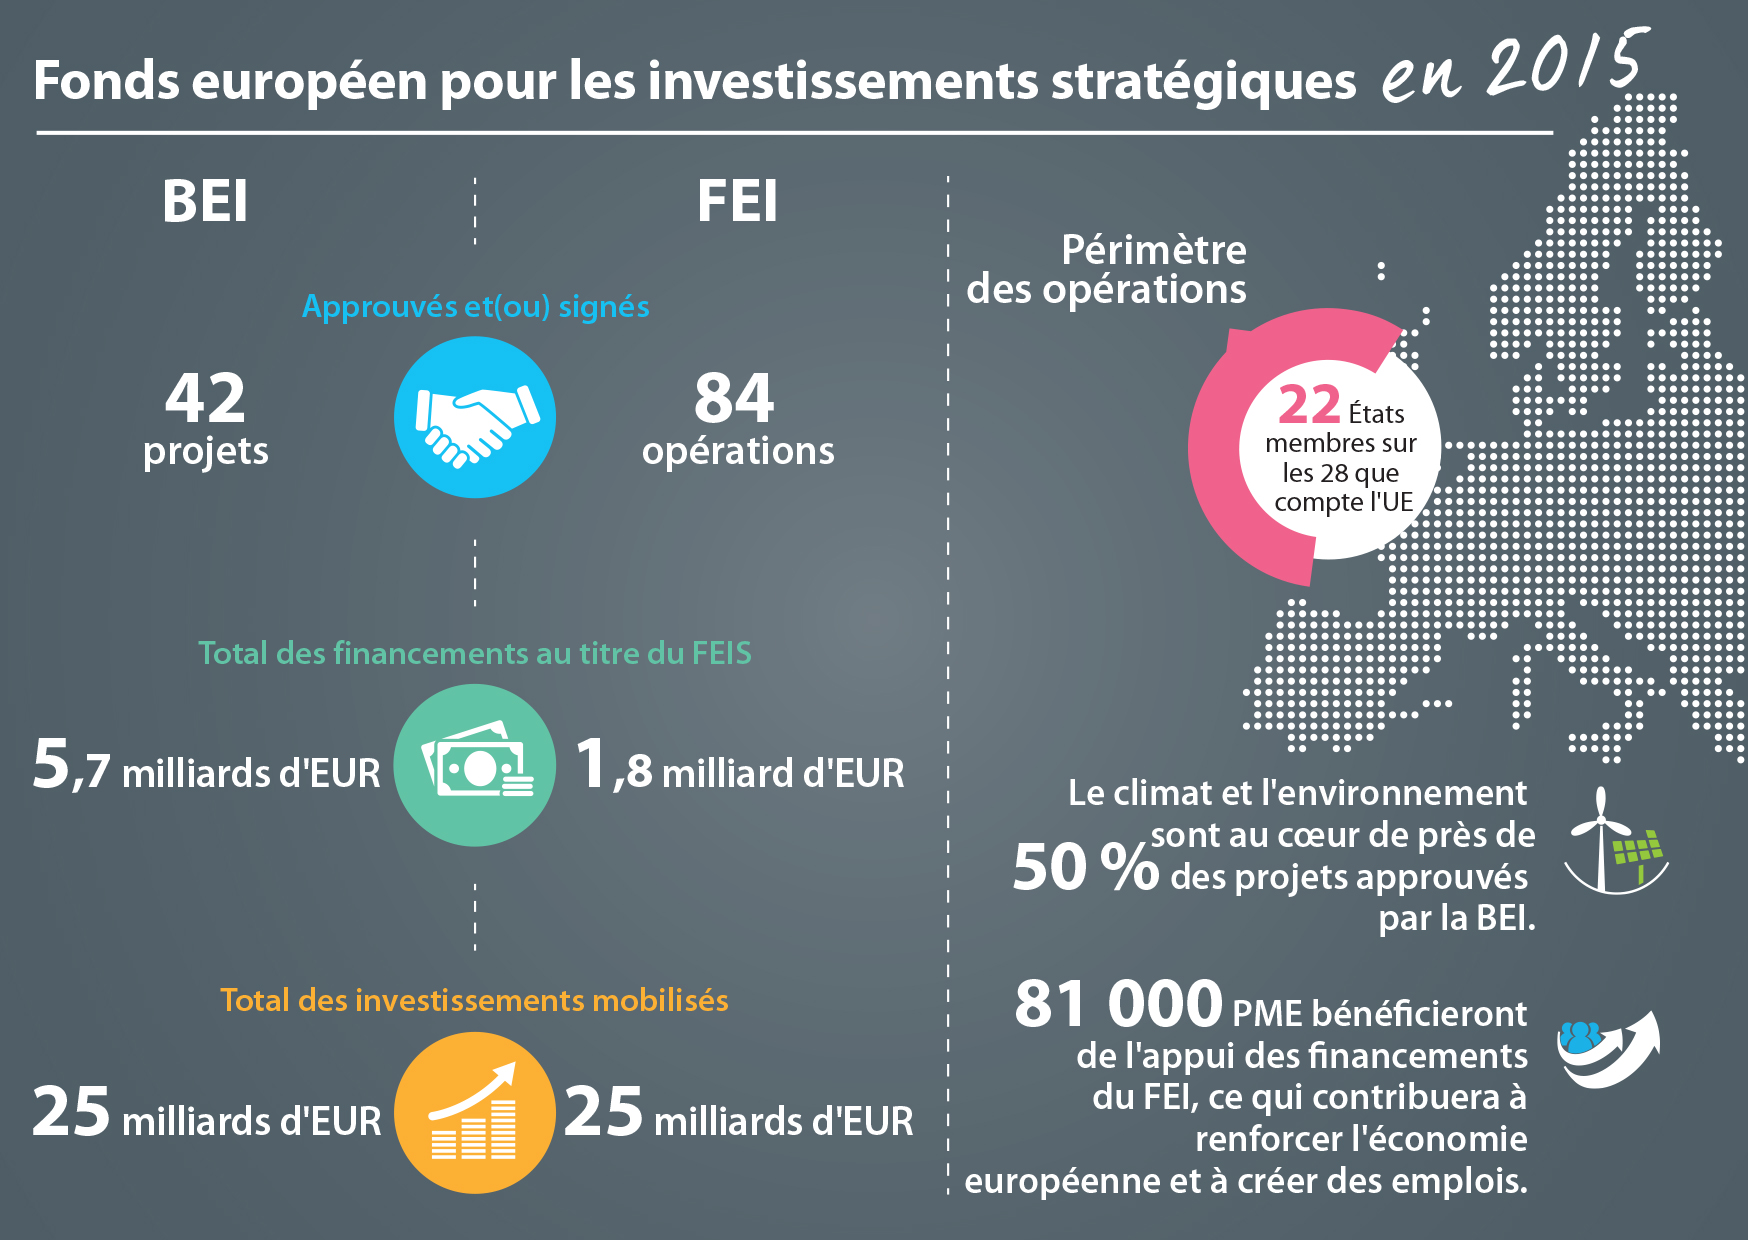 Le fonds européen pour les investissements stratégiques en 2015